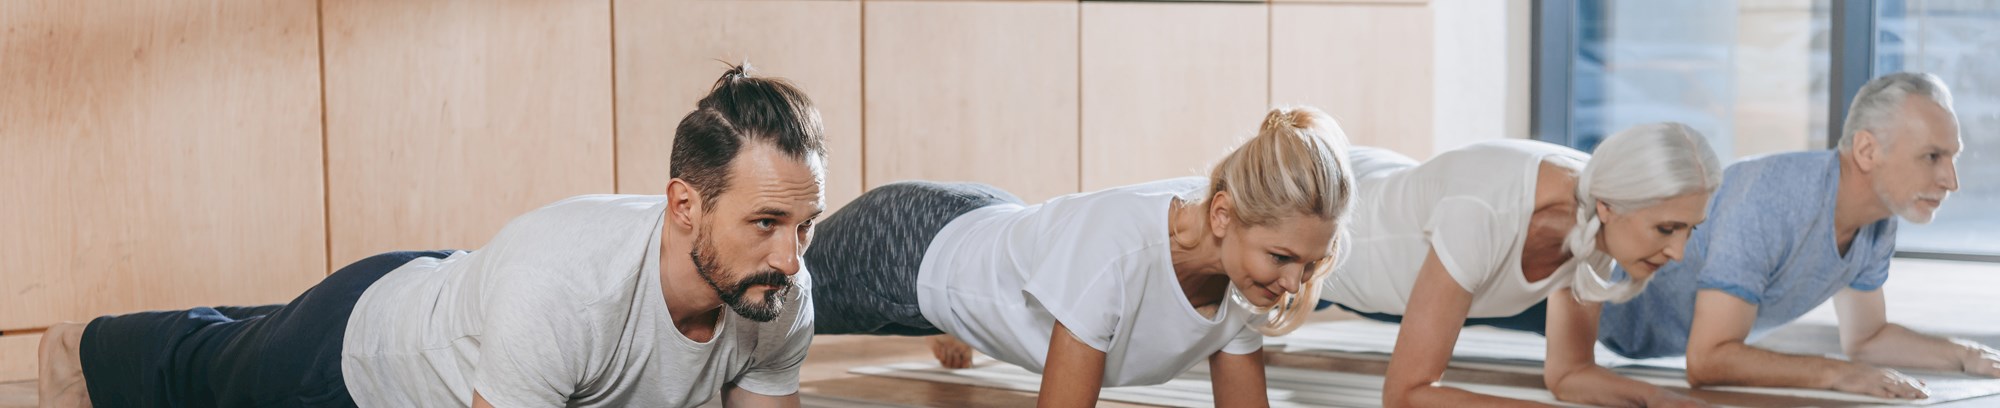 FOF Sønderjylland Yoga fire personer i yogastilling på gulv